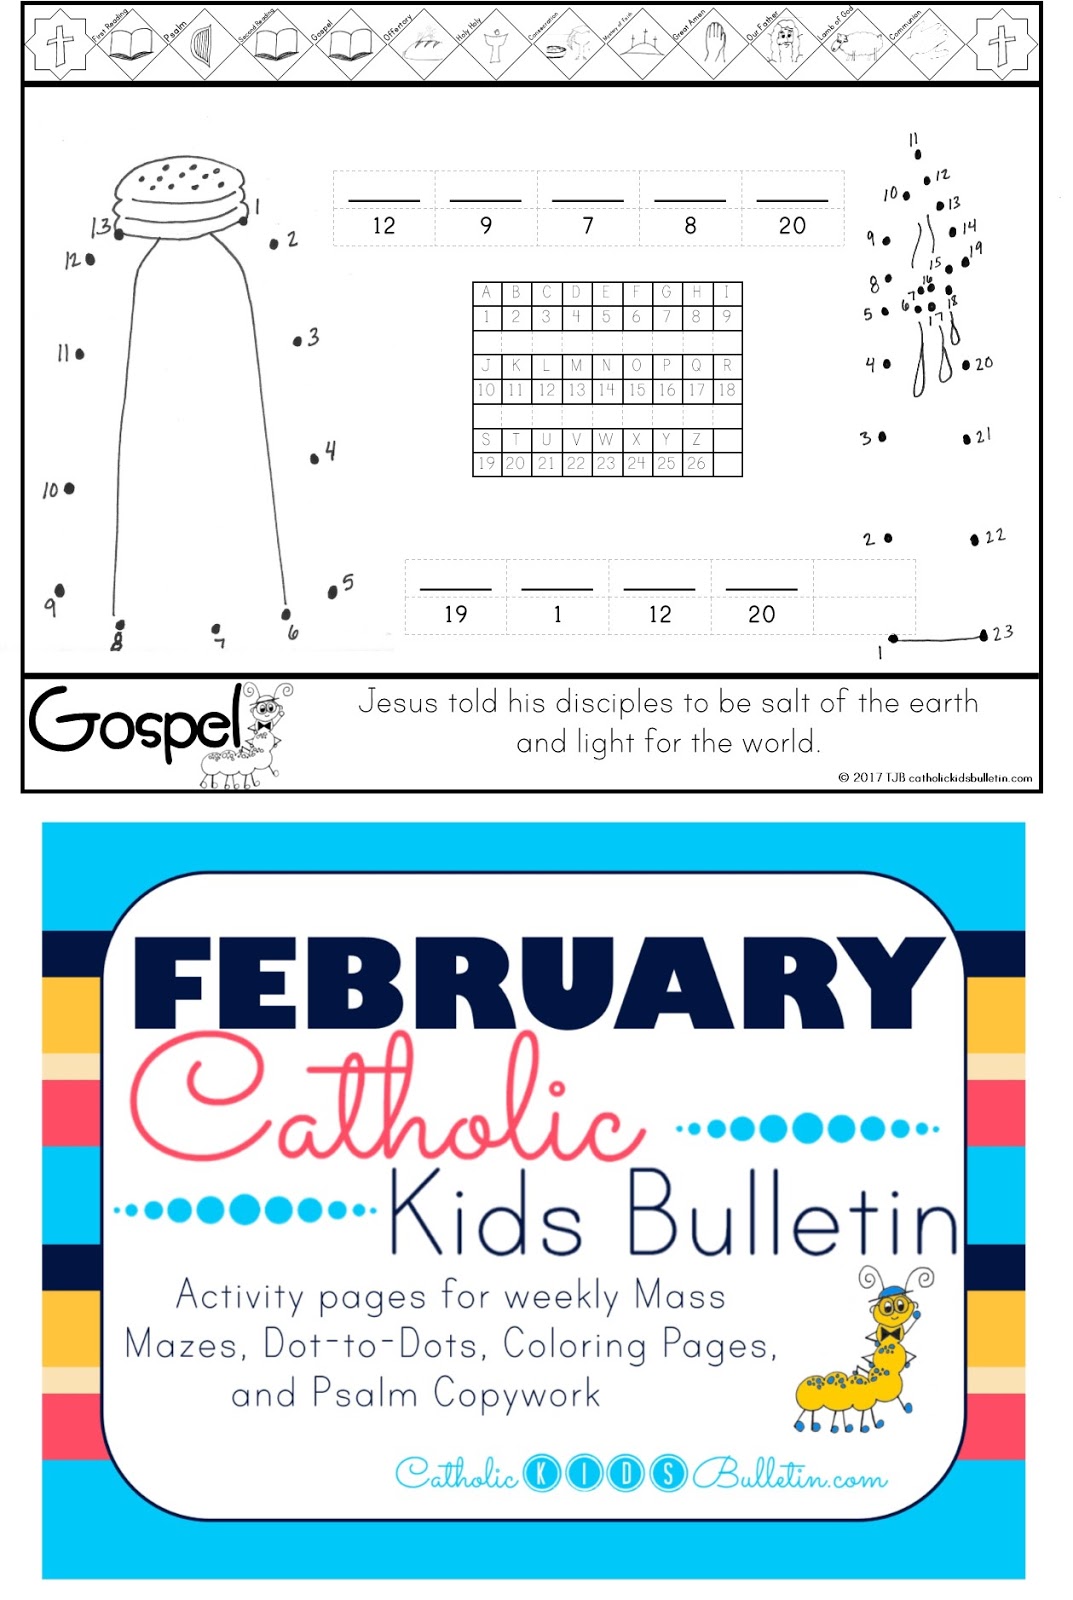 Download Catholic Kids: February Catholic Kids Bulletin